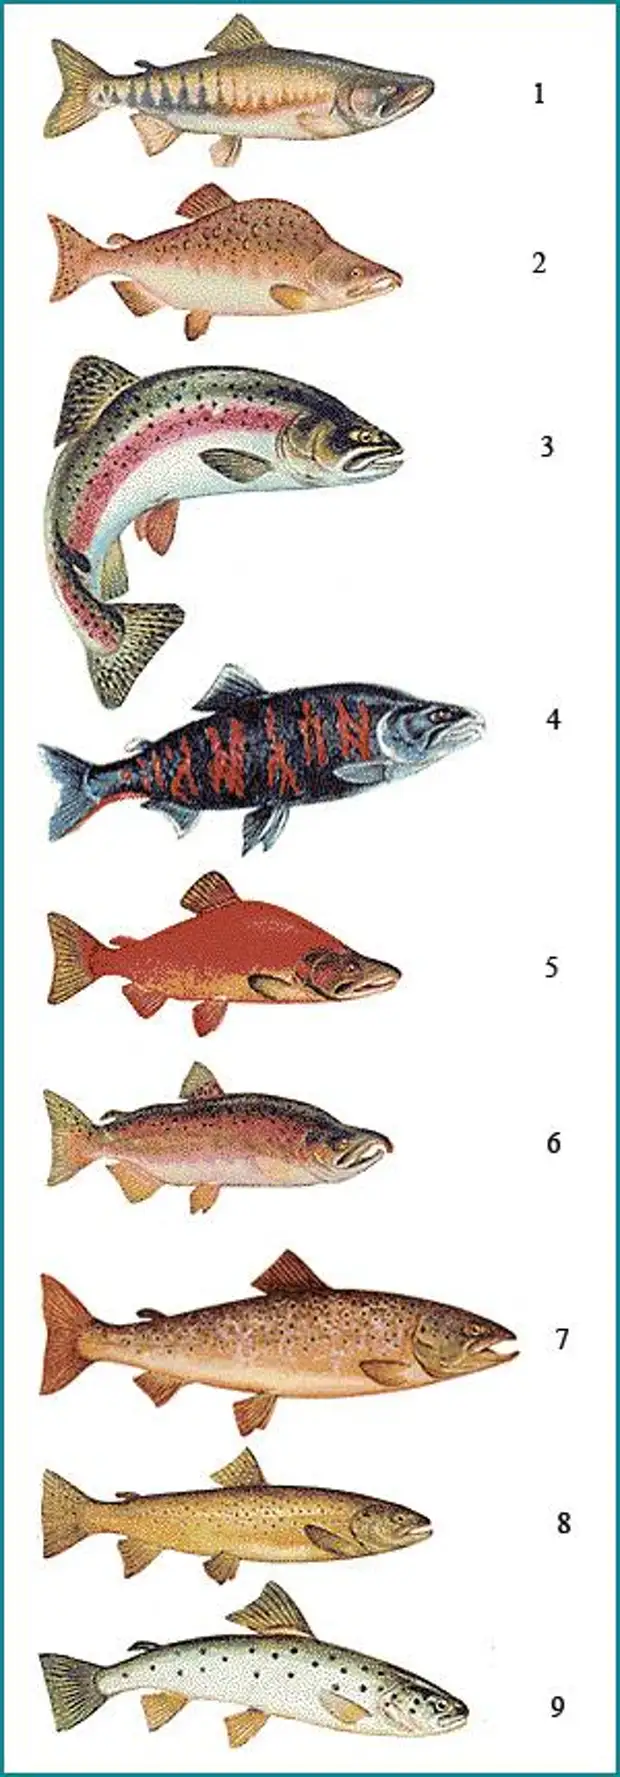 виды лососевых рыб названия и картинки